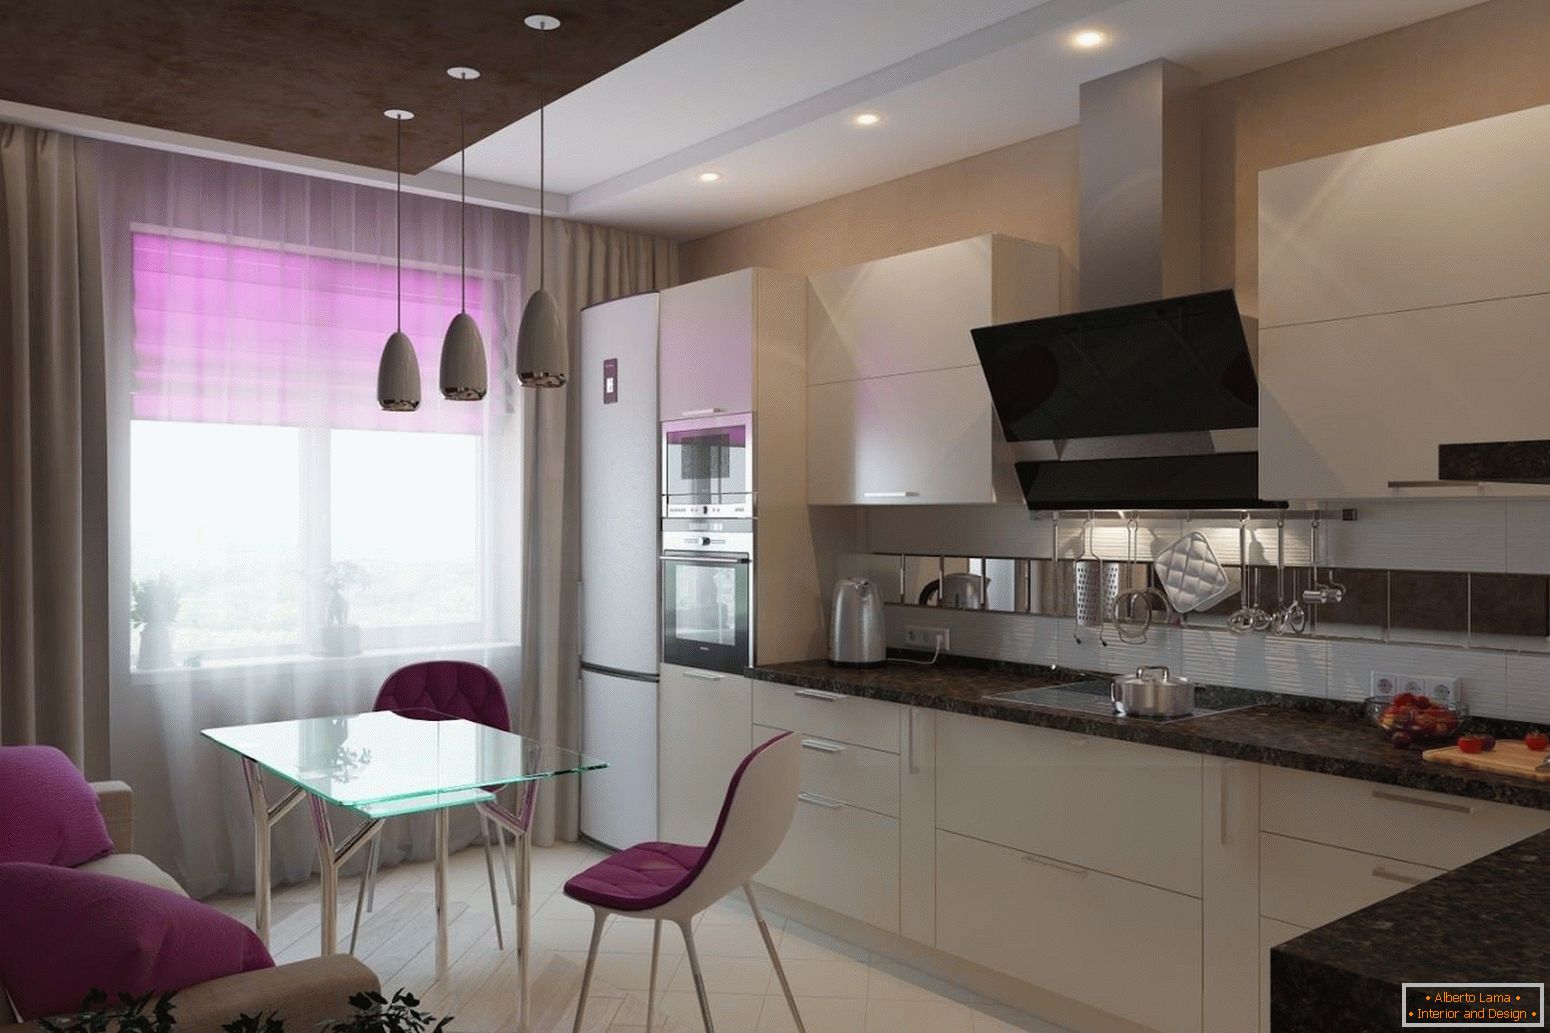 Cozinha branca com elementos lilás de decoração